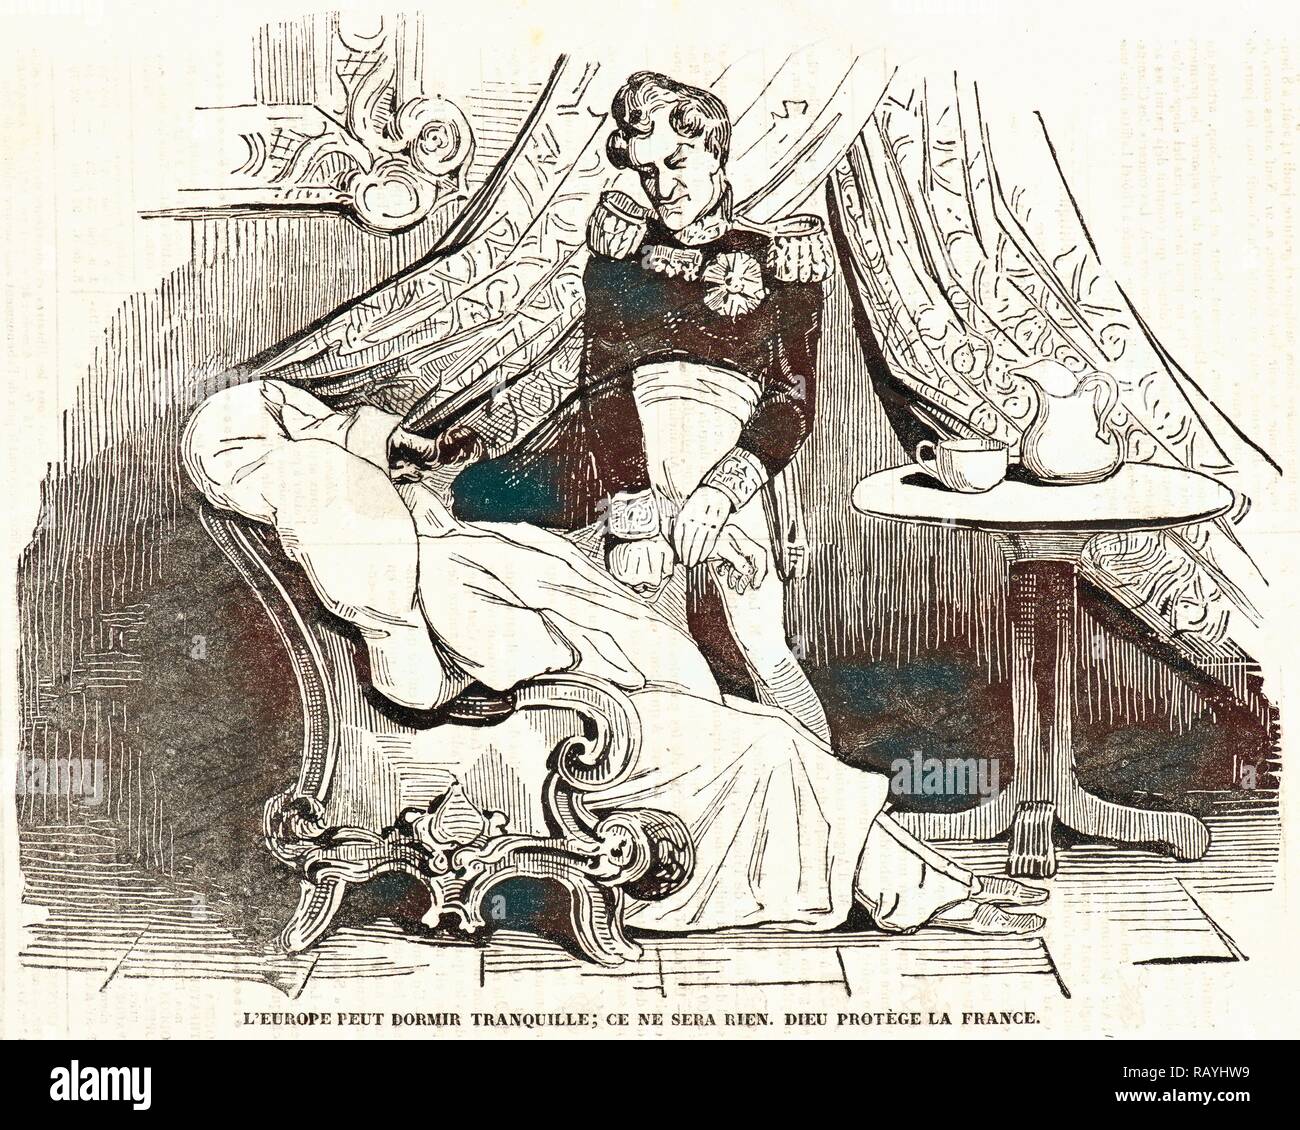 Honoré Daumier (French, 1808 - 1879). L'Europe peut dormir Tranquille, ce ne sera bien. Dieu protège la France., 1834 reimagined Stock Photo